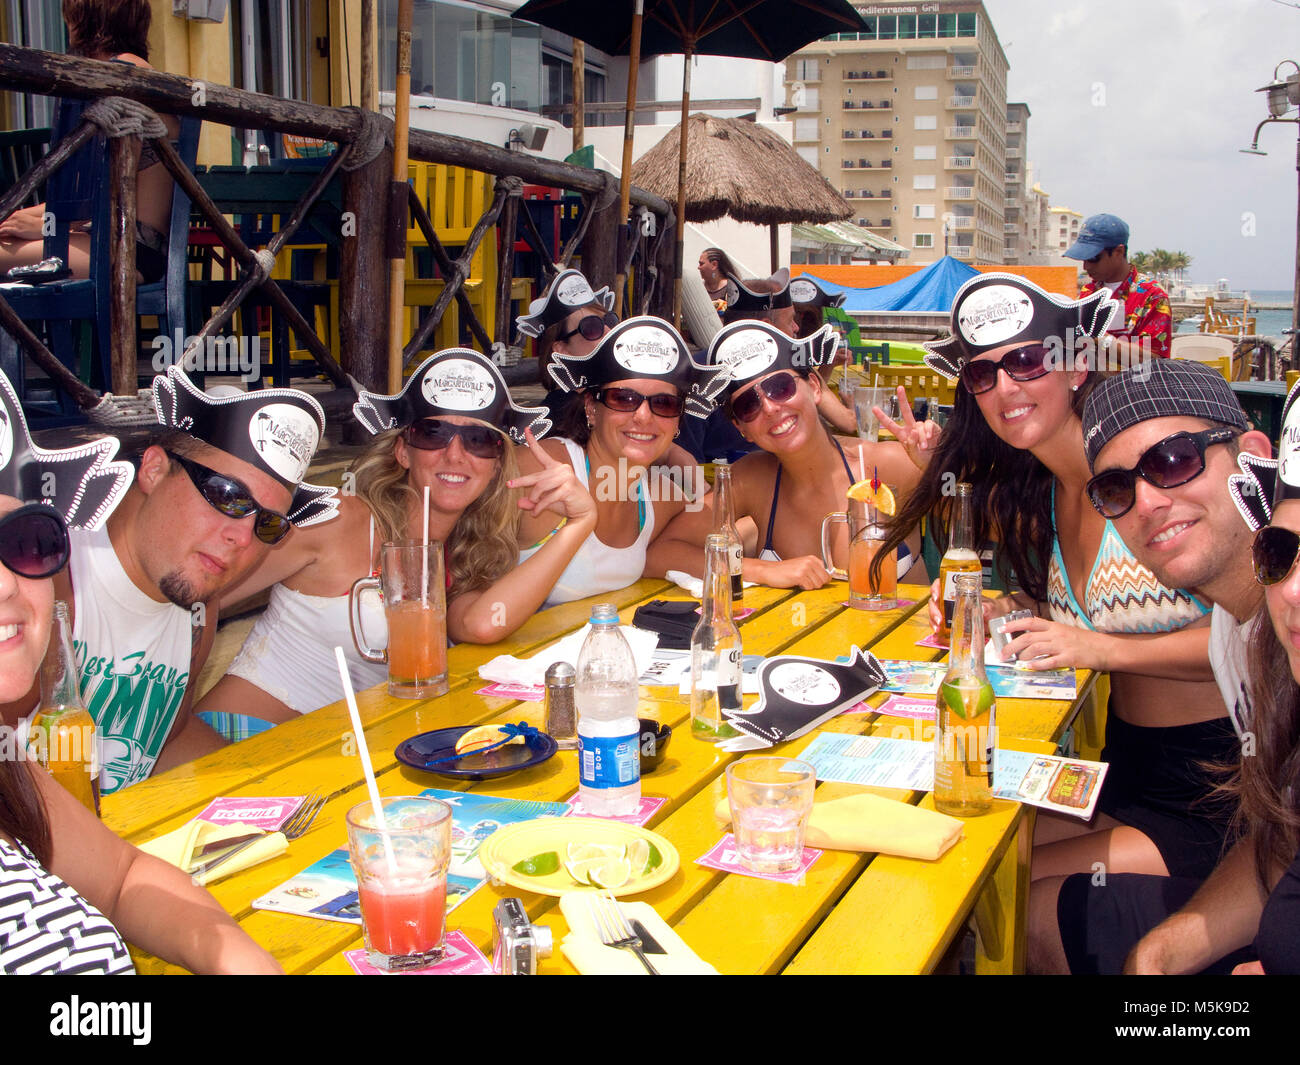 Junge Touristen mit Pirate caps feiern Bar am Strand, Taucher Bar's Margaritaville, San Miguel, Cozumel, Mexiko, der Karibik Stockfoto